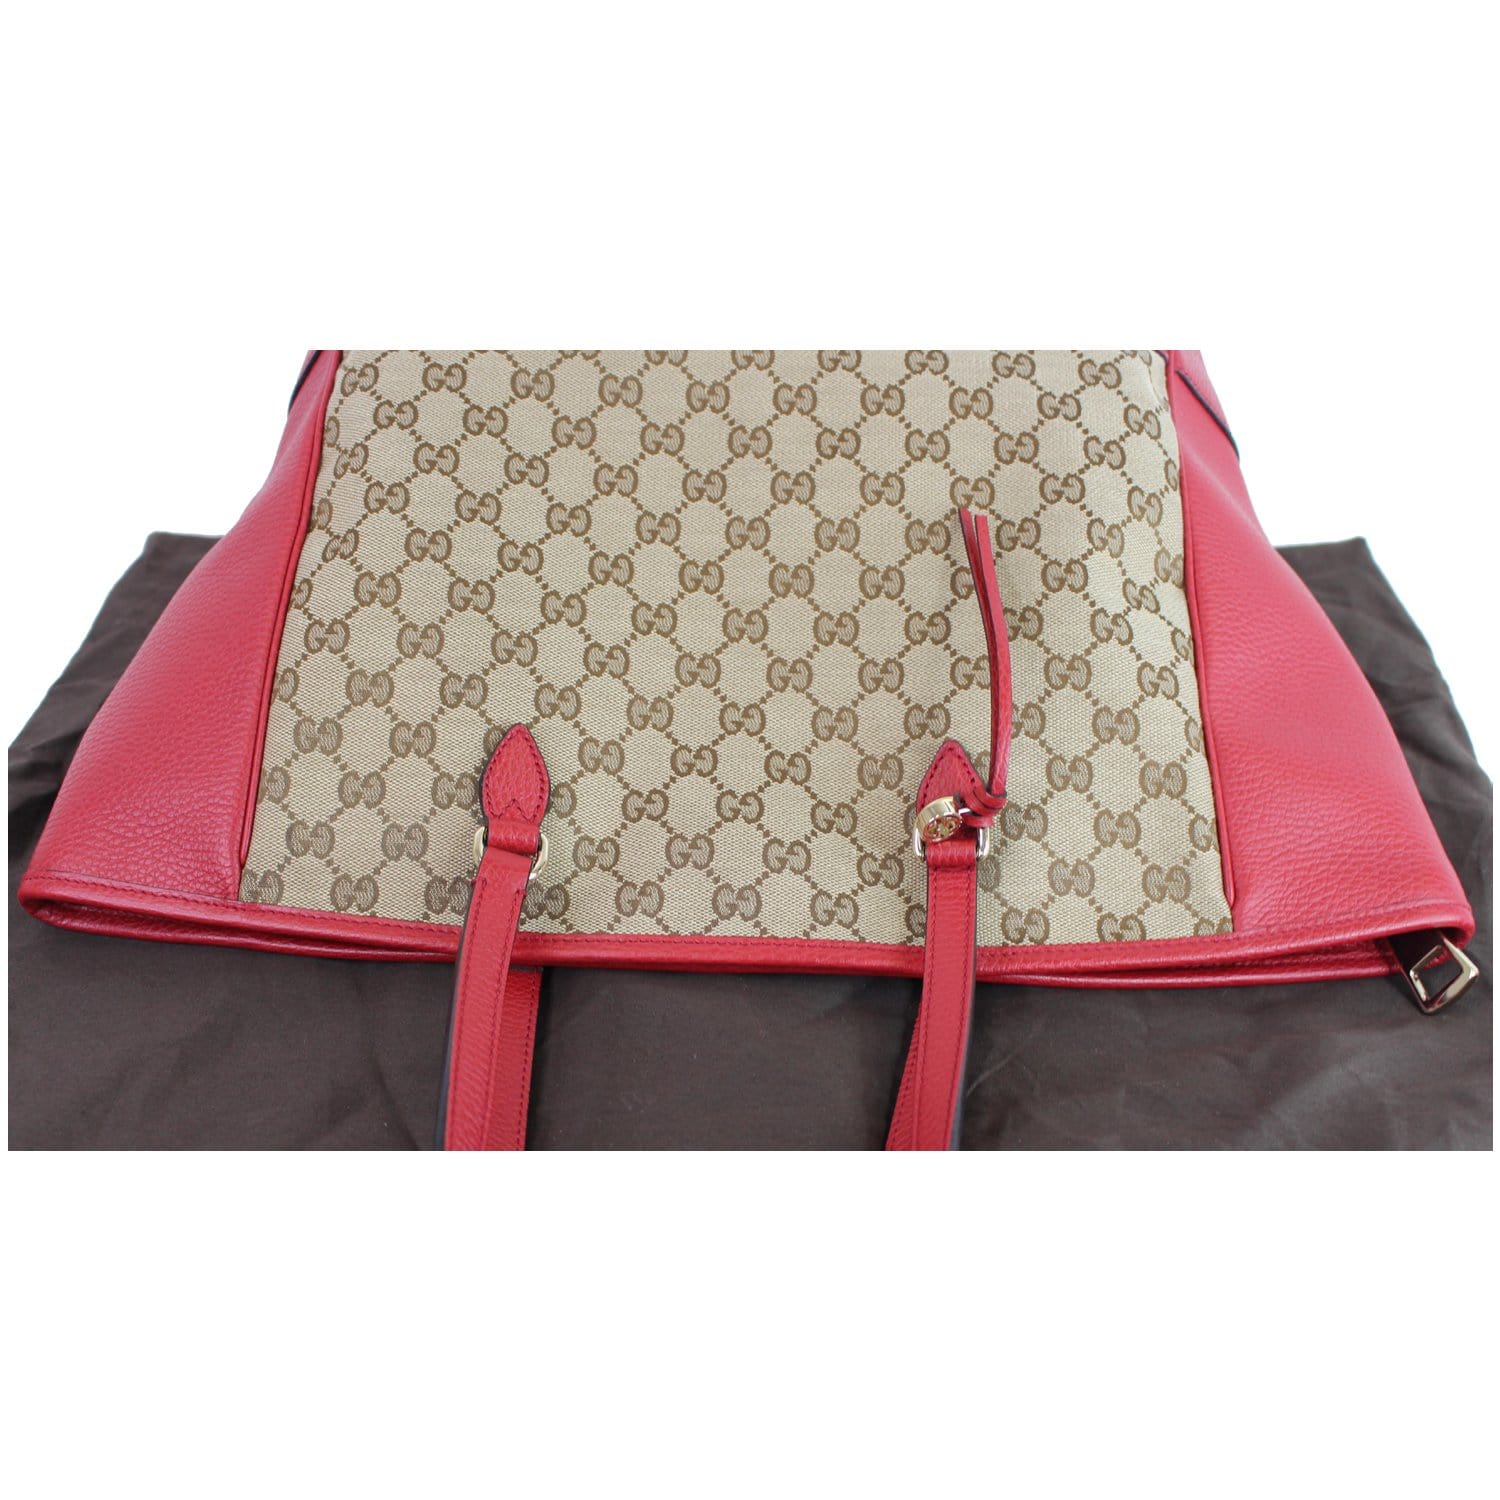 Gucci GG Canvas Small Bree Tote Bag - Pink Totes, Handbags